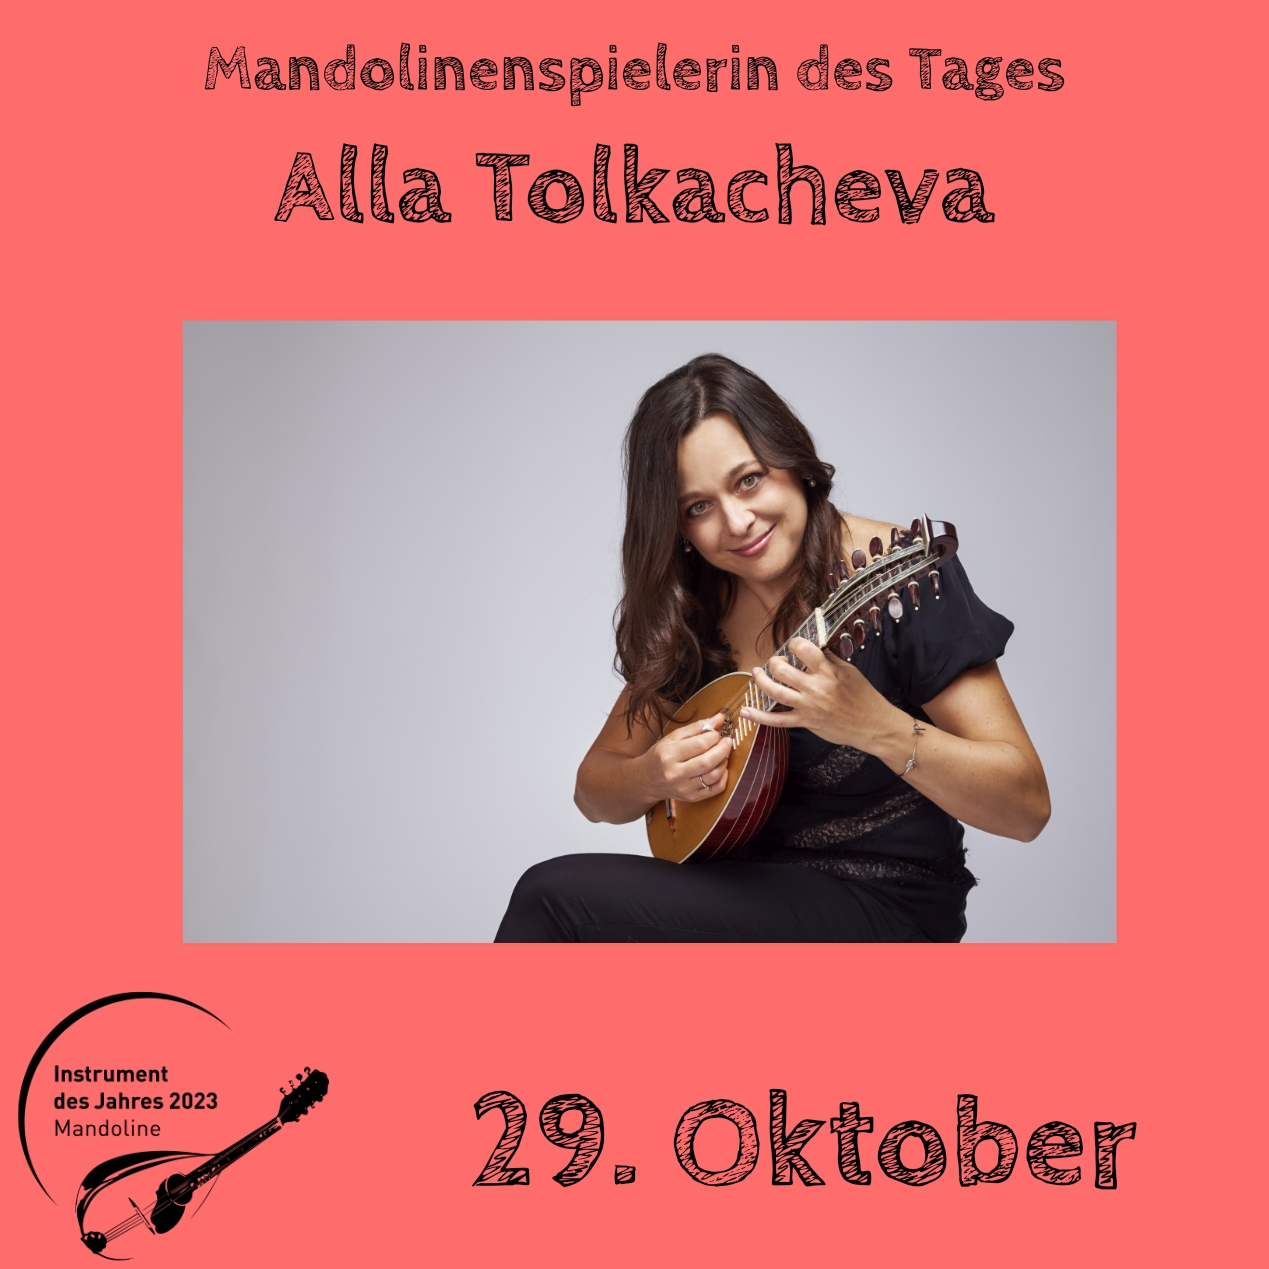 29. Oktober - Alla Tolkacheva Instrument des Jahres 2023 Mandolinenspieler Mandolinenspielerin des Tages